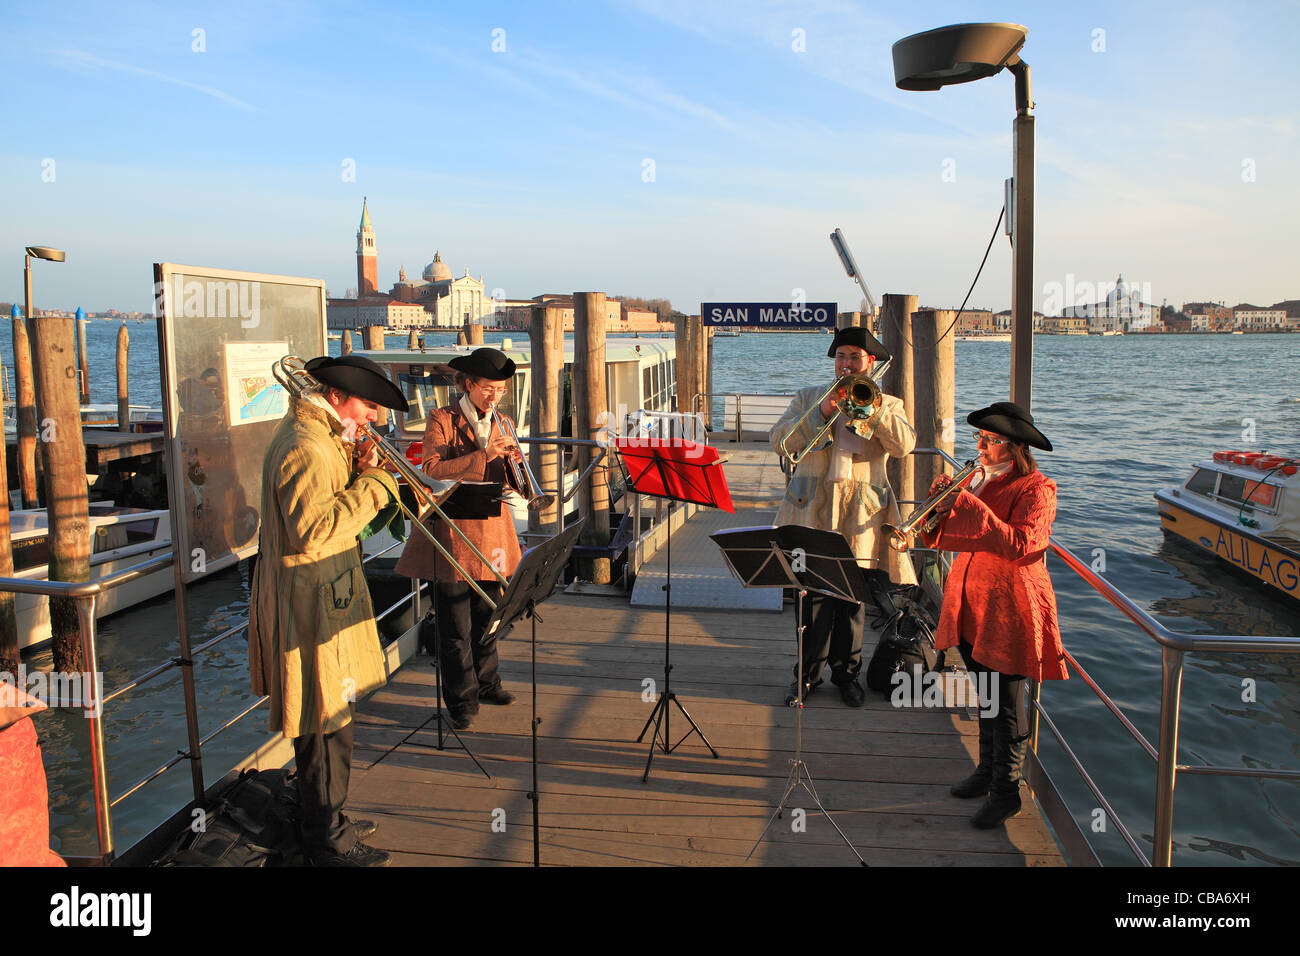 Banda musicale nei tradizionali costumi di carnevale riproduzione di musica classica presso il molo sul Canal Grande durante il carnevale veneziano. Foto Stock